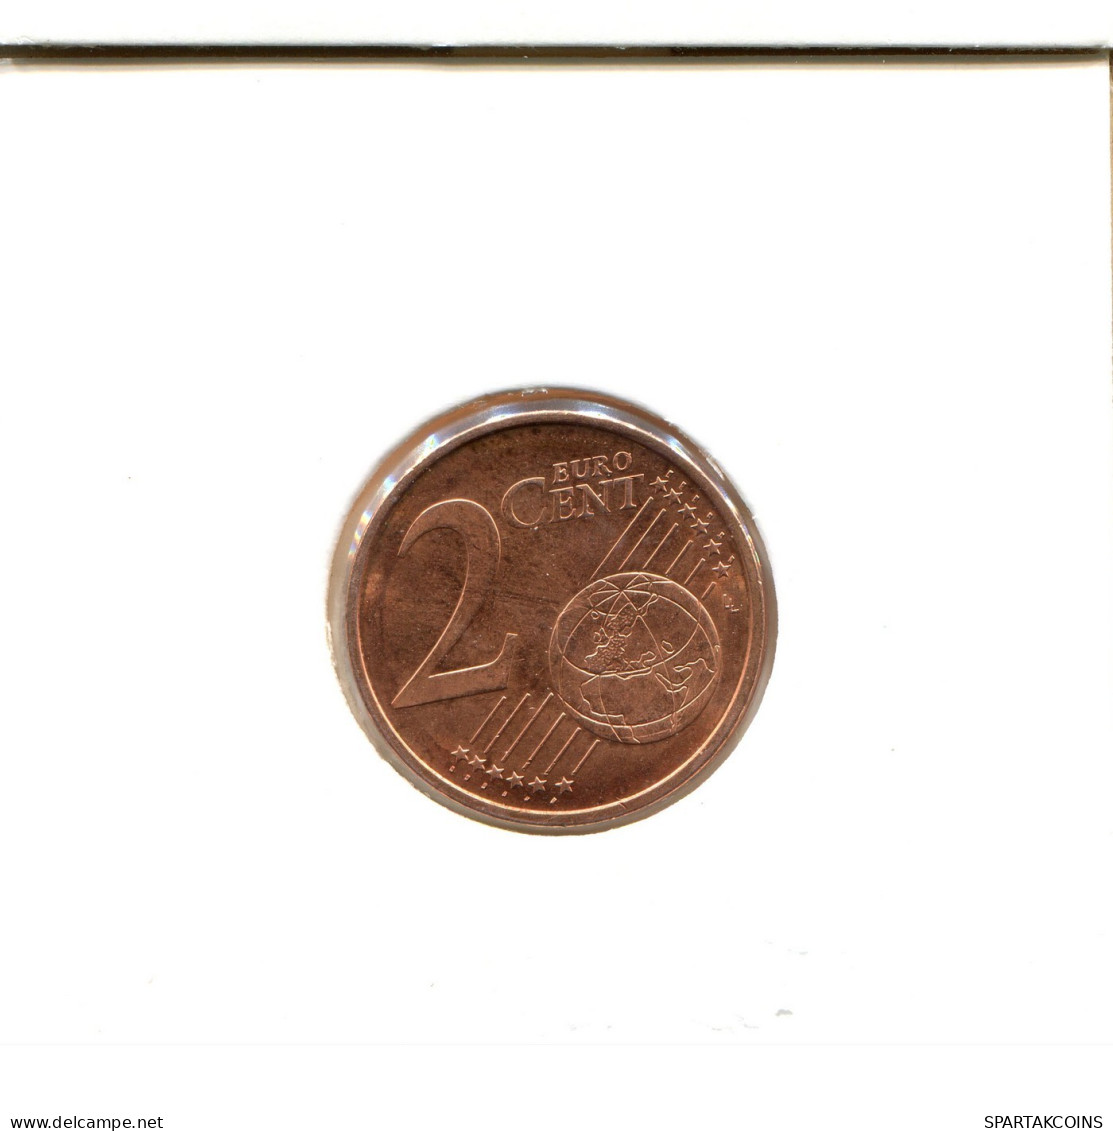 2 EURO CENTS 2013 FINLAND Coin #EU084.U.A - Finlandia